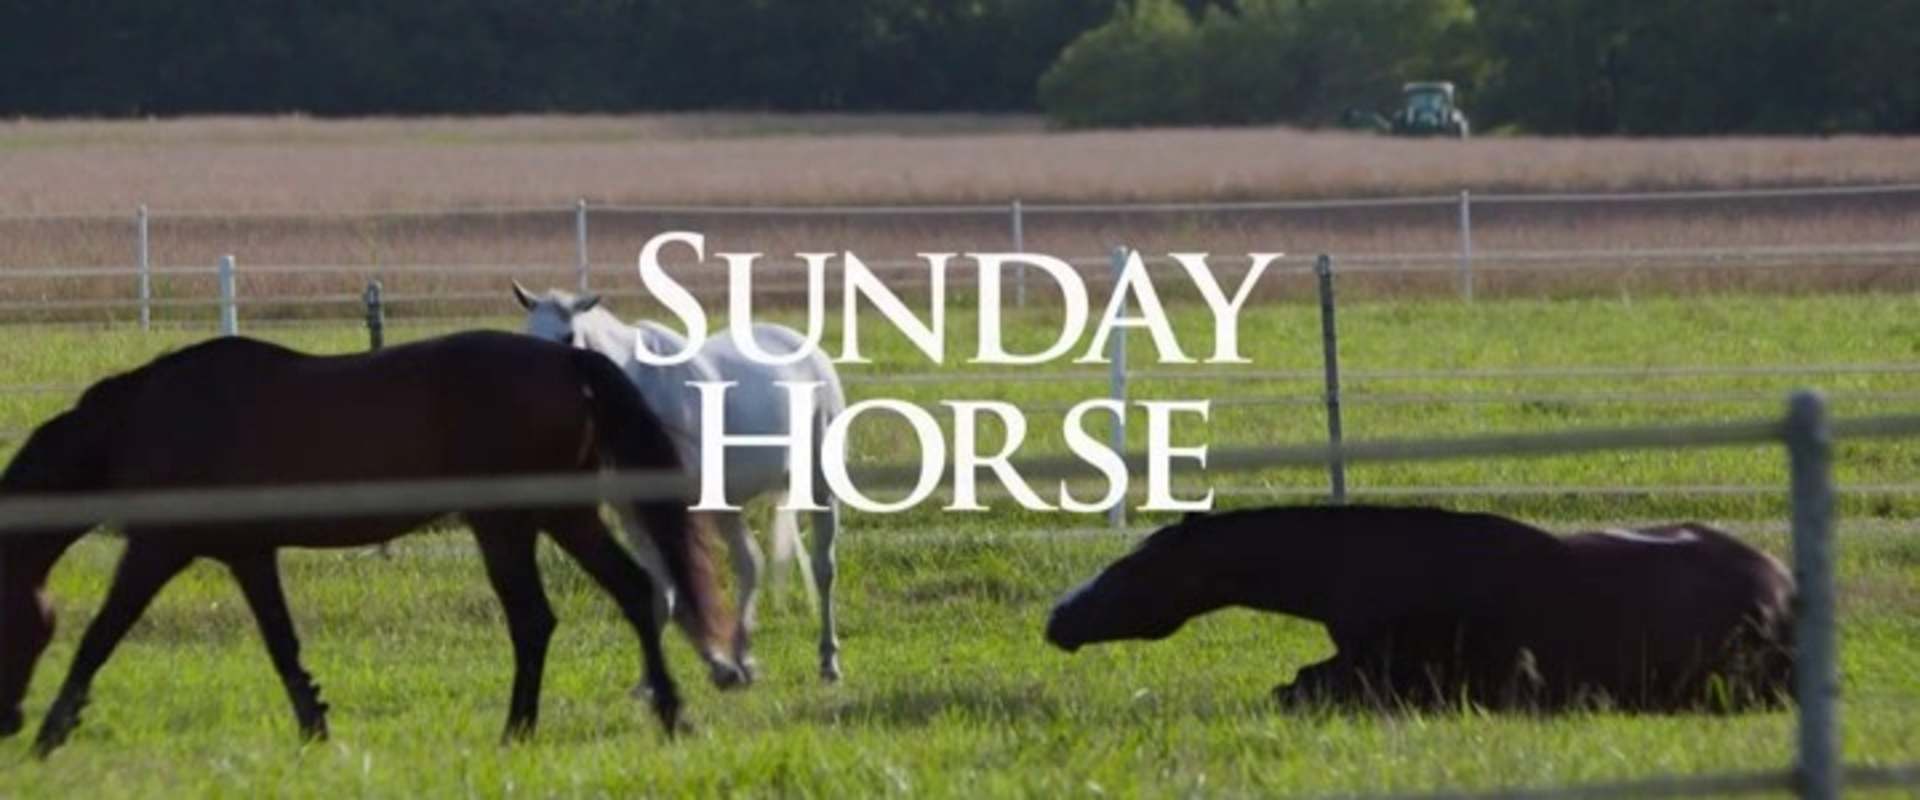 A Sunday Horse background 2